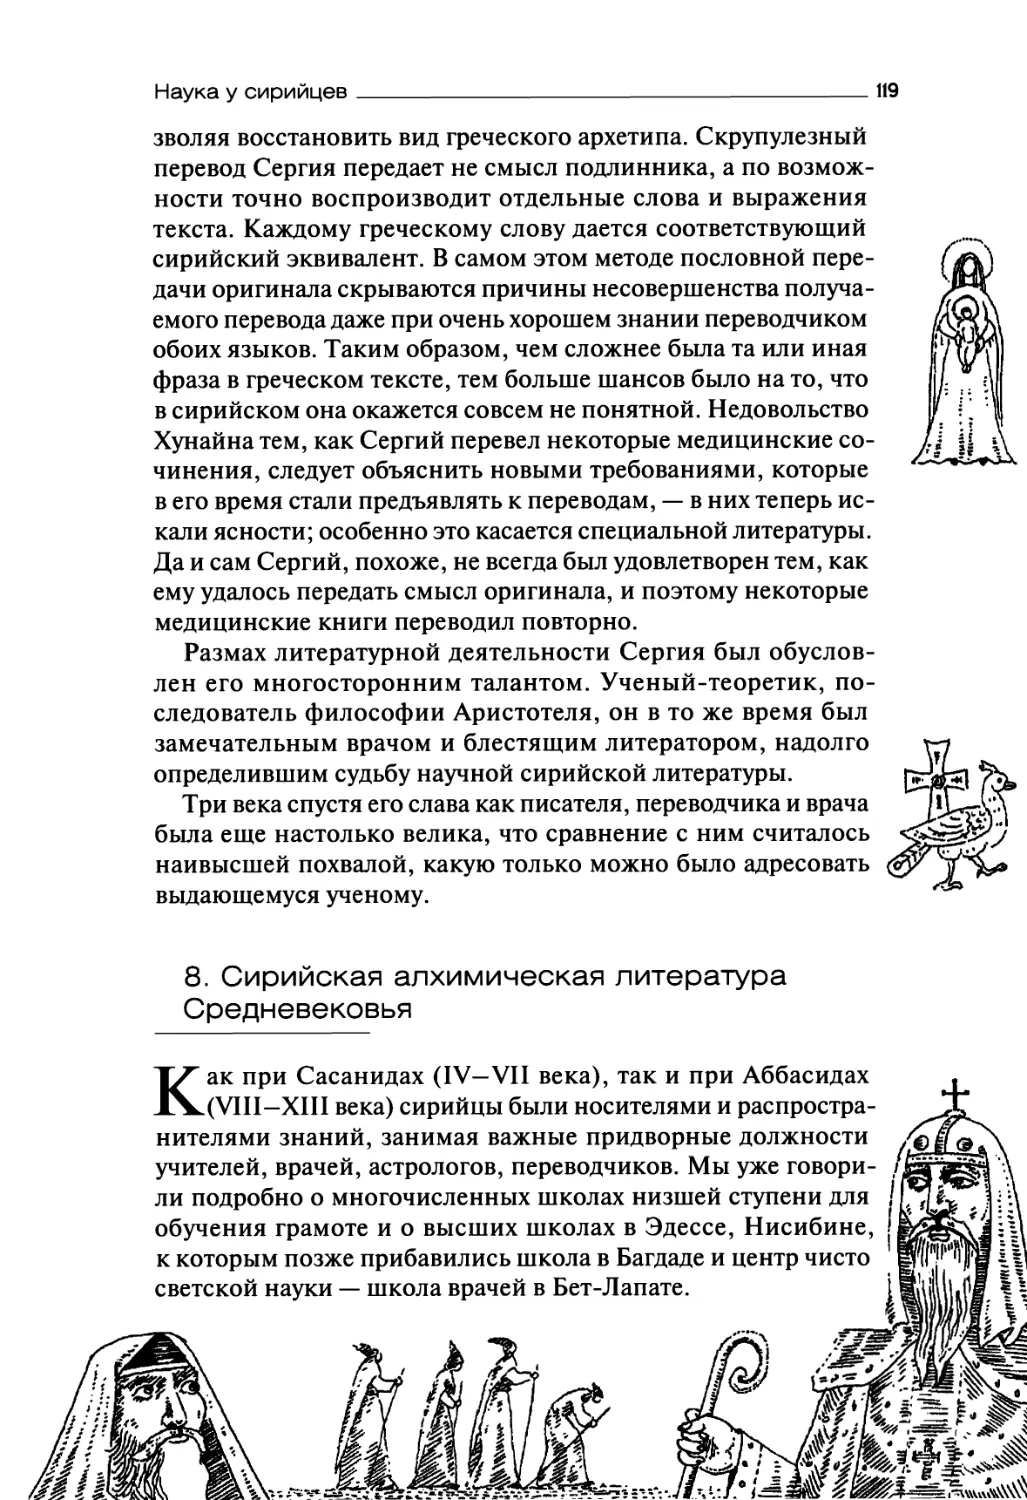 8. Сирийская алхимическая литература Средневековья